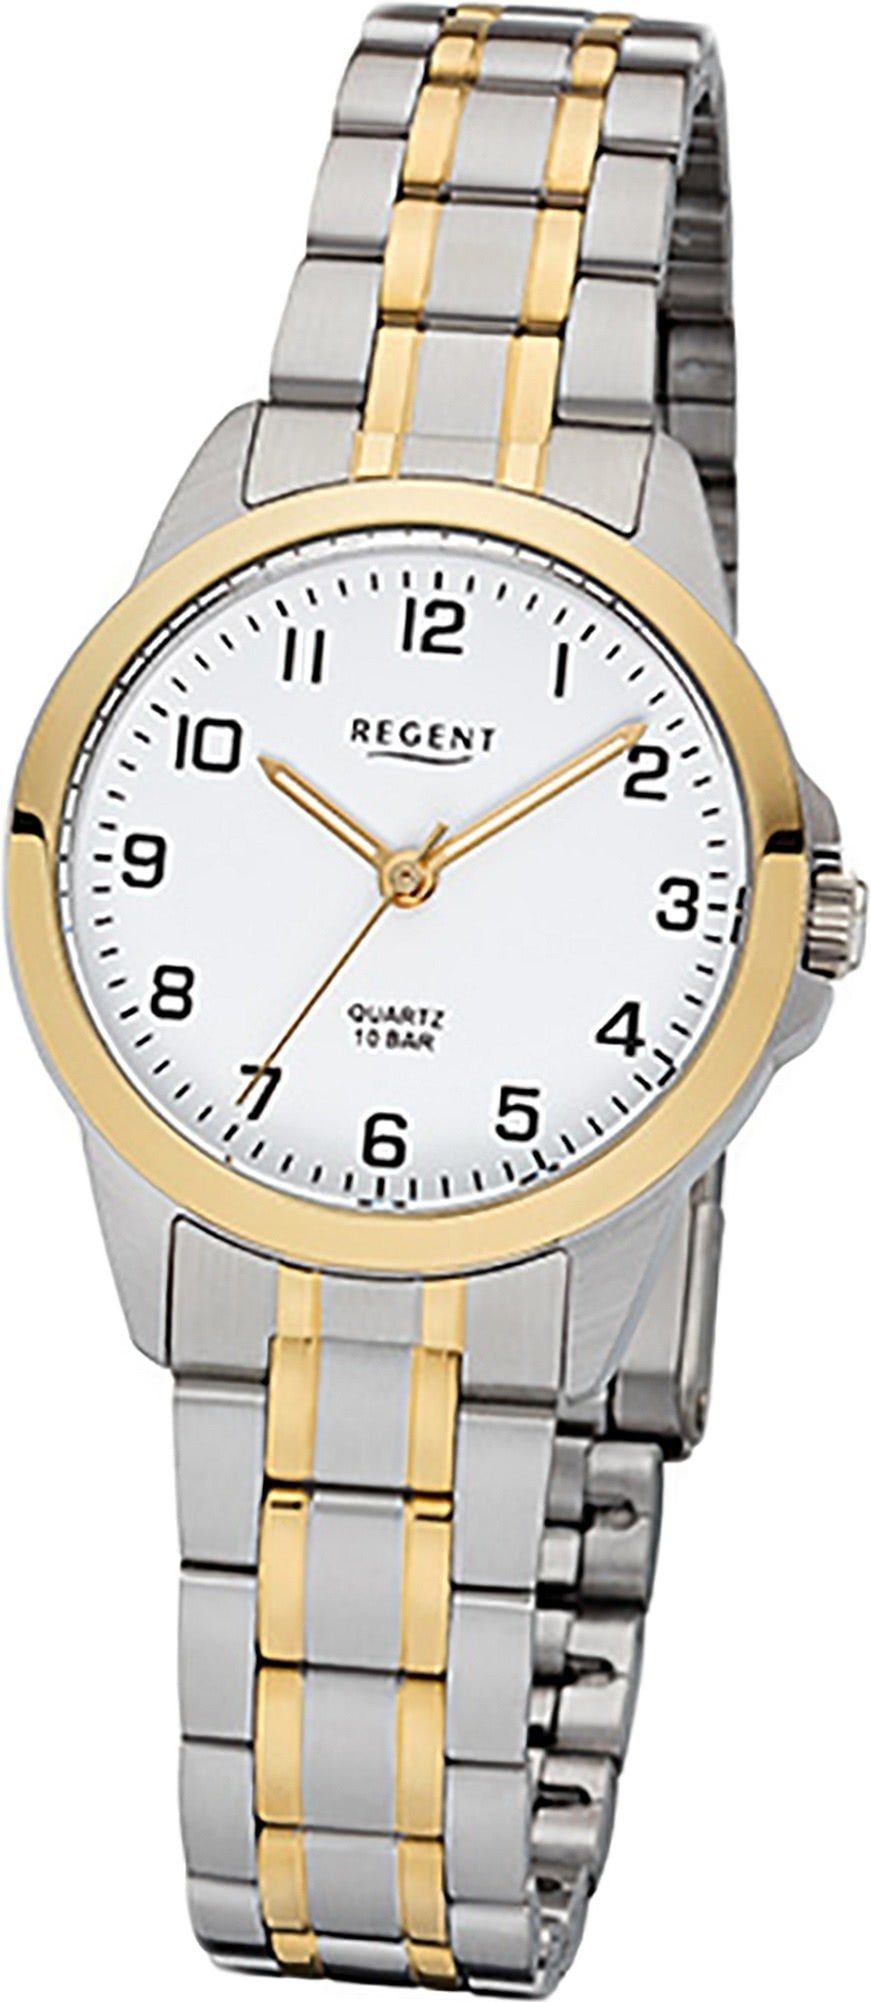 Regent Quarzuhr Regent Edelstahl Damen Uhr F-1006 Quarz, Damenuhr Edelstahlarmband silber, gold, rundes Gehäuse, klein (29mm)